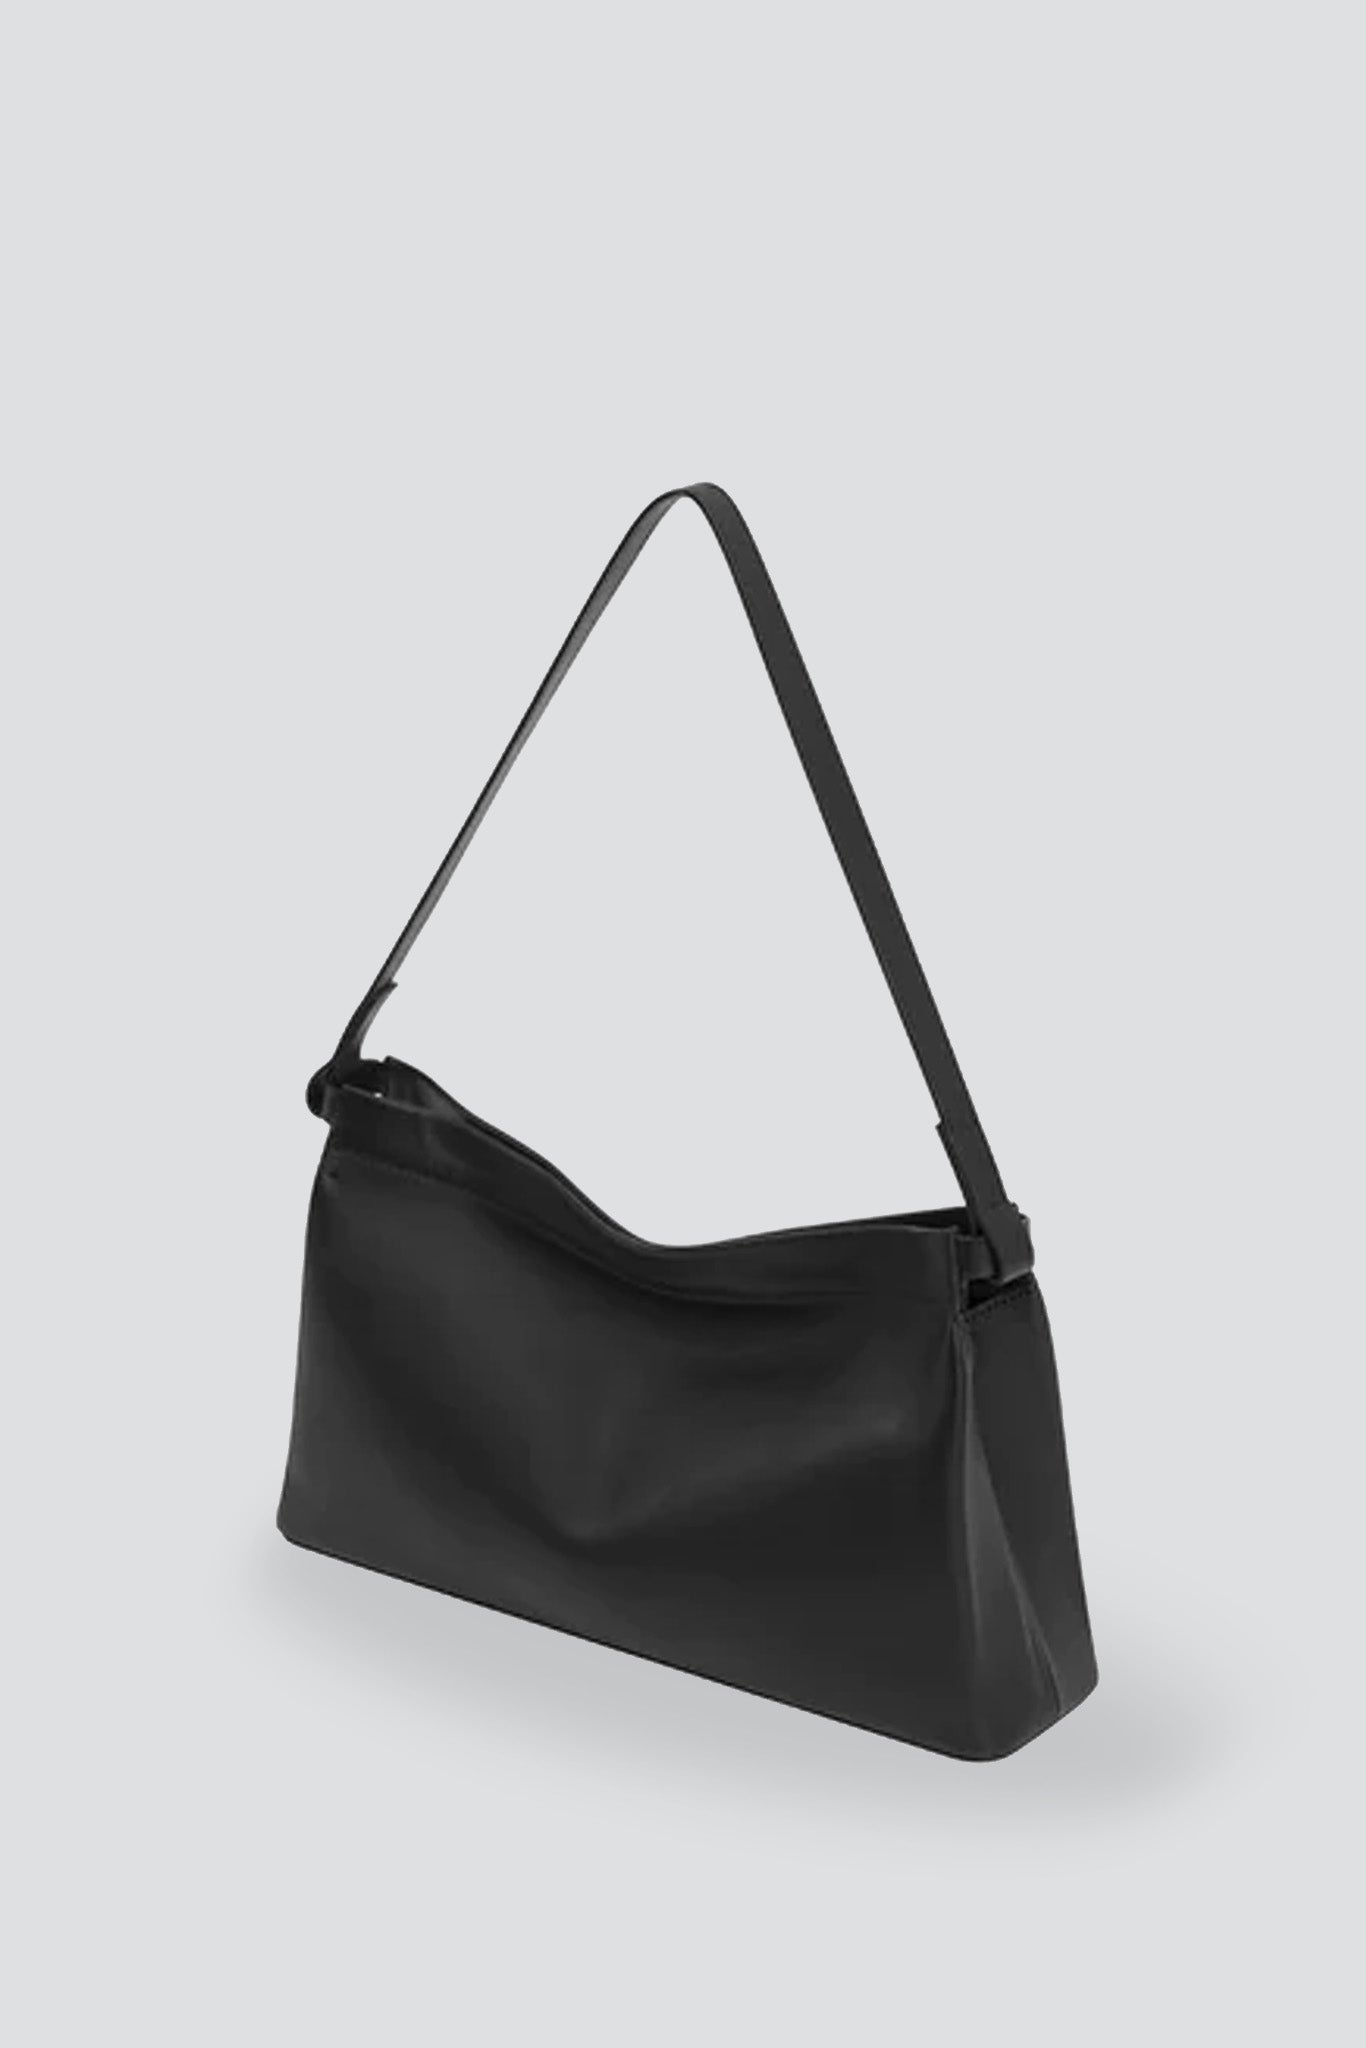 AESTHER EKME Handbag SWAY BAGUETTE in black